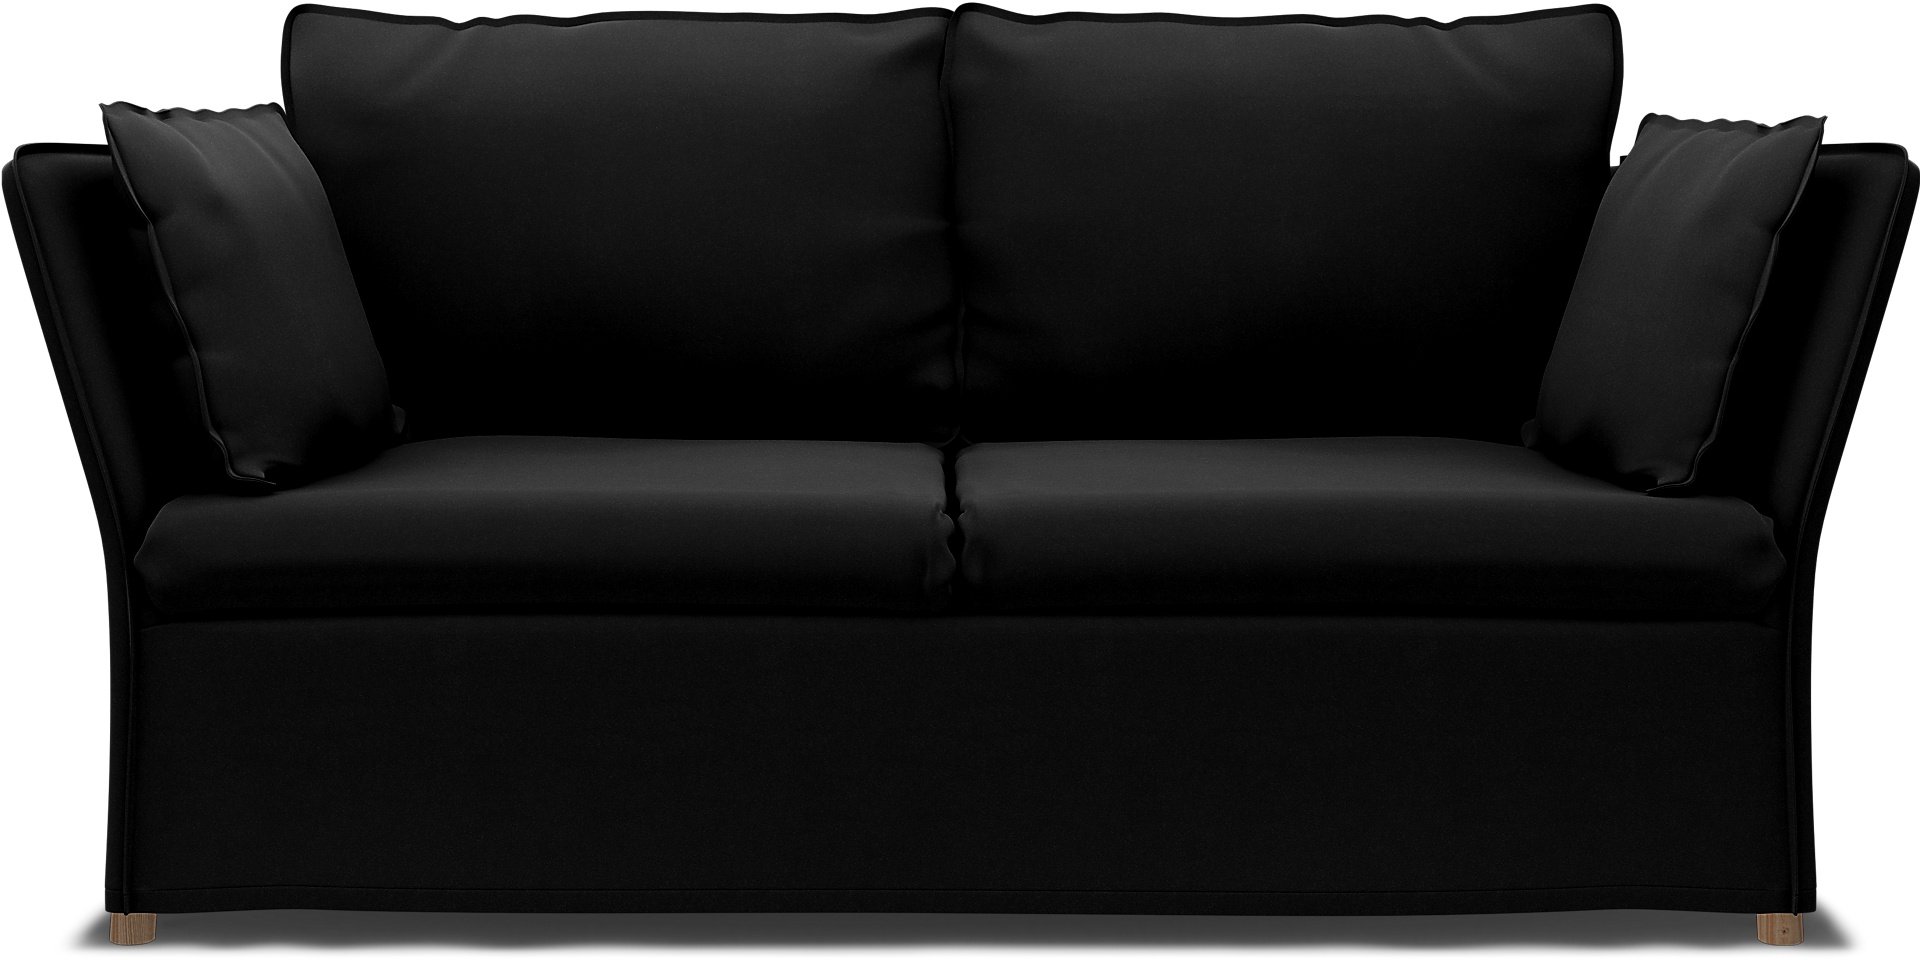 IKEA - Backsalen 2 seater sofa, Black, Velvet - Bemz